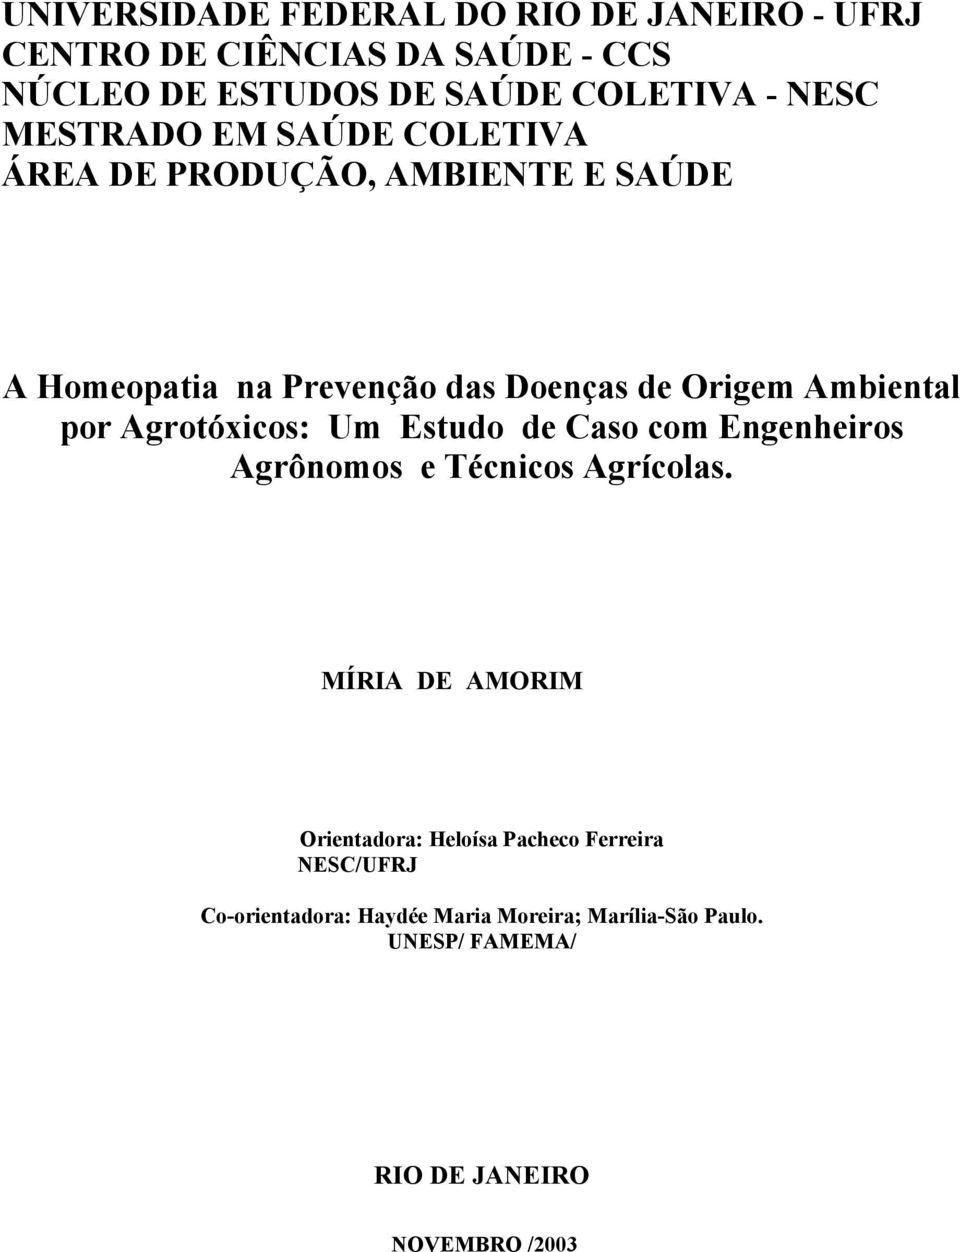 por Agrotóxicos: Um Estudo de Caso com Engenheiros Agrônomos e Técnicos Agrícolas.